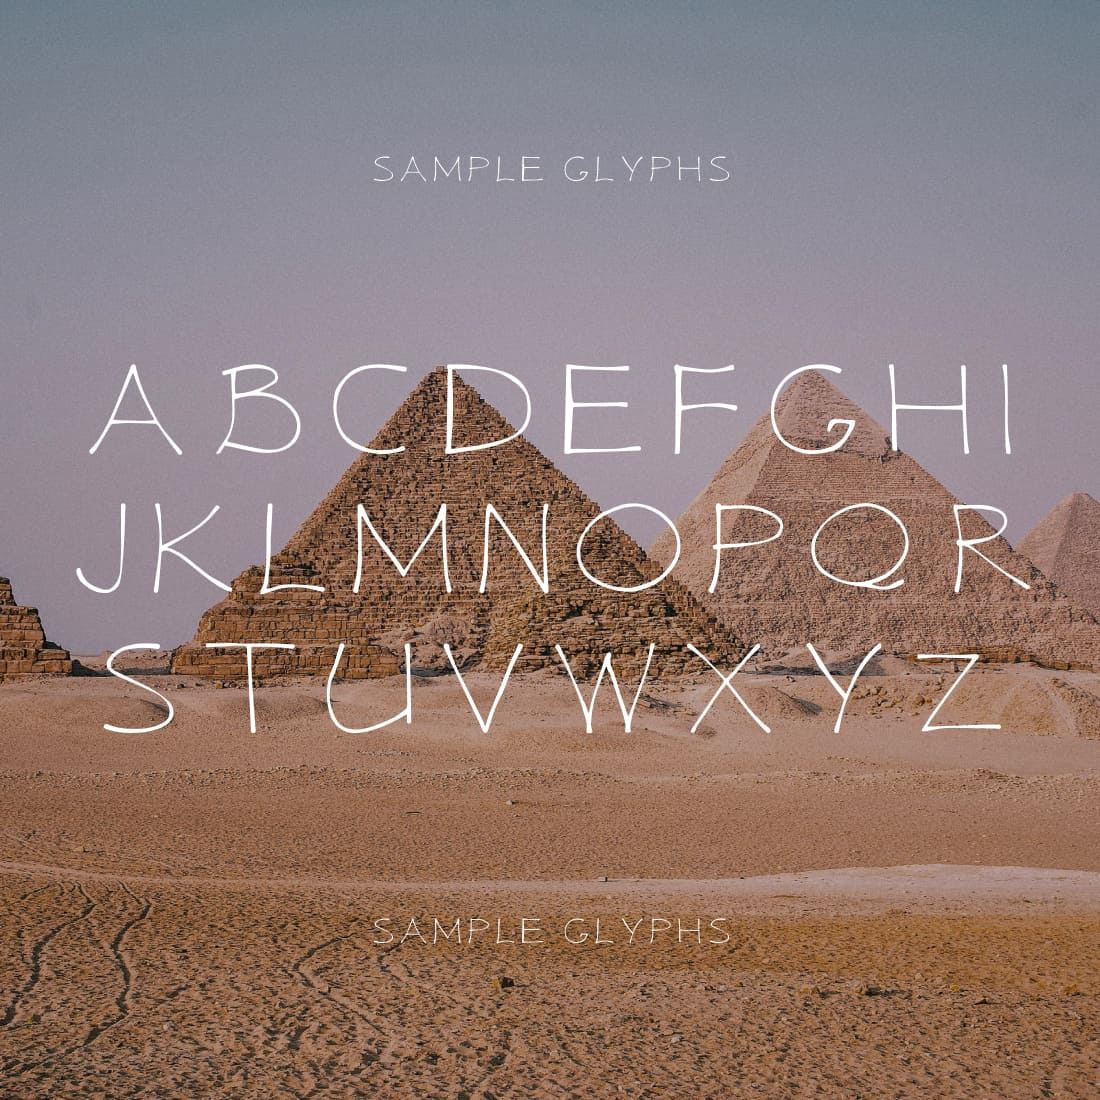 Egypt papyrus script font sample glyphs.